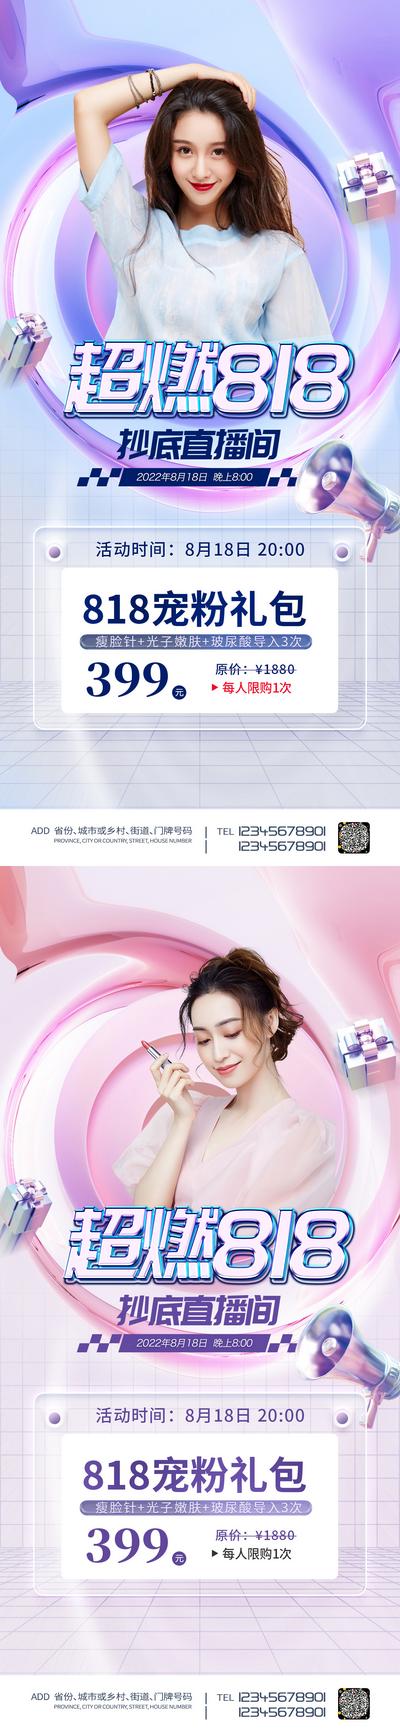 南门网 广告 海报 医美 人物 模特 818 活动 促销 直播 预售